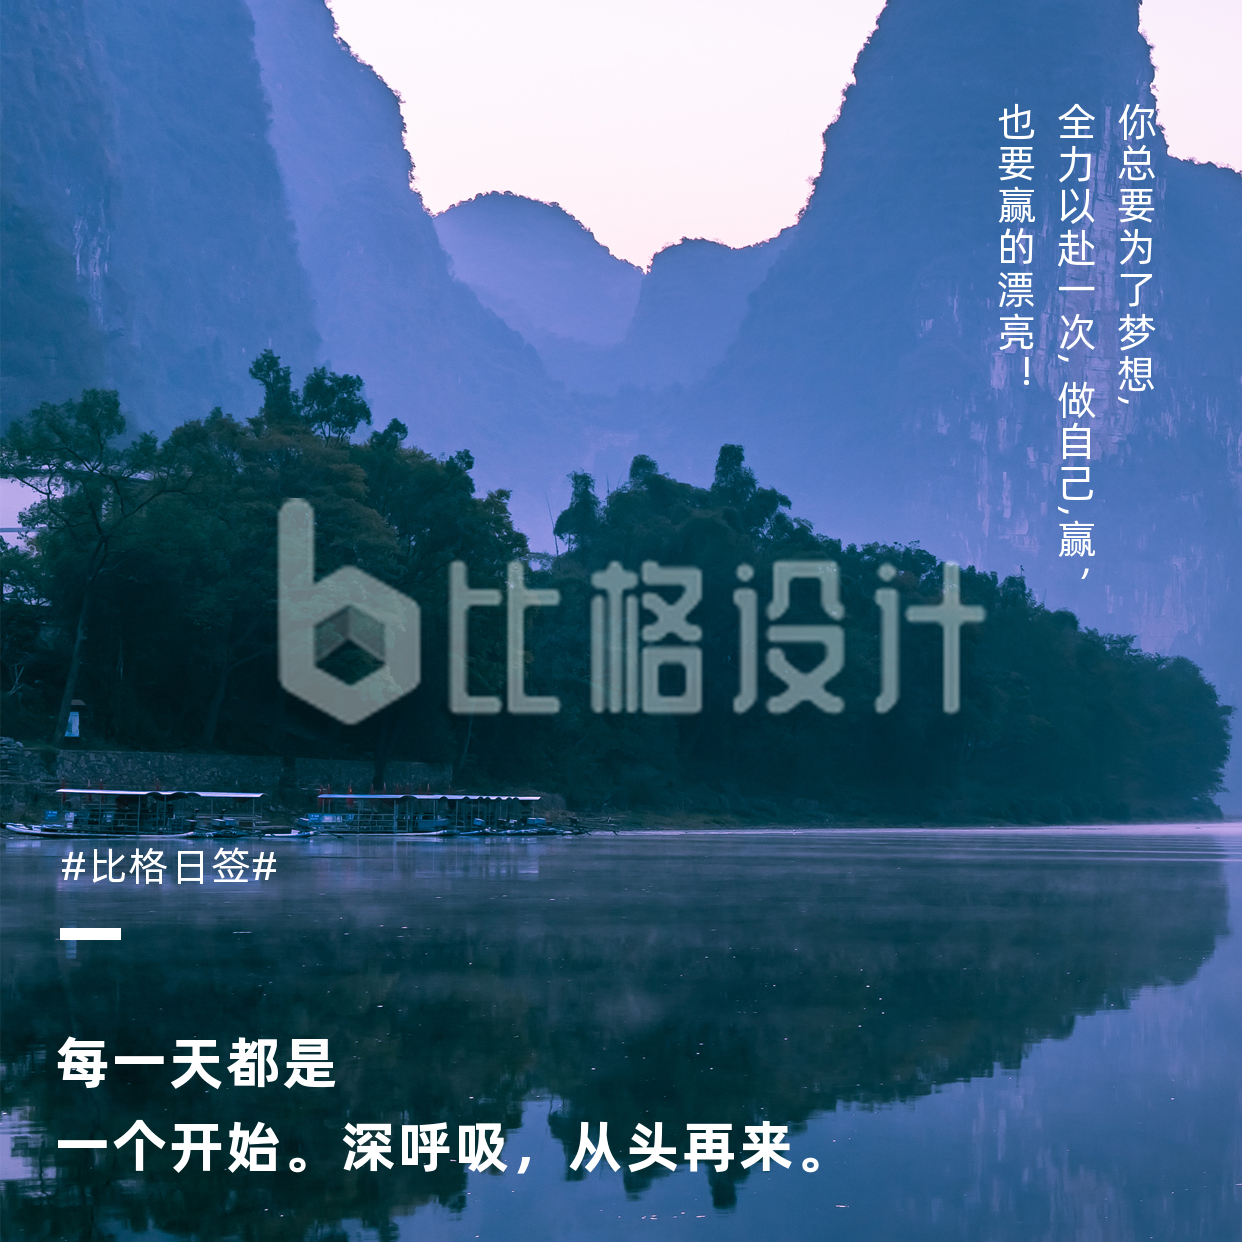 基础排版日签励志语录紫色山水风景实景方形海报